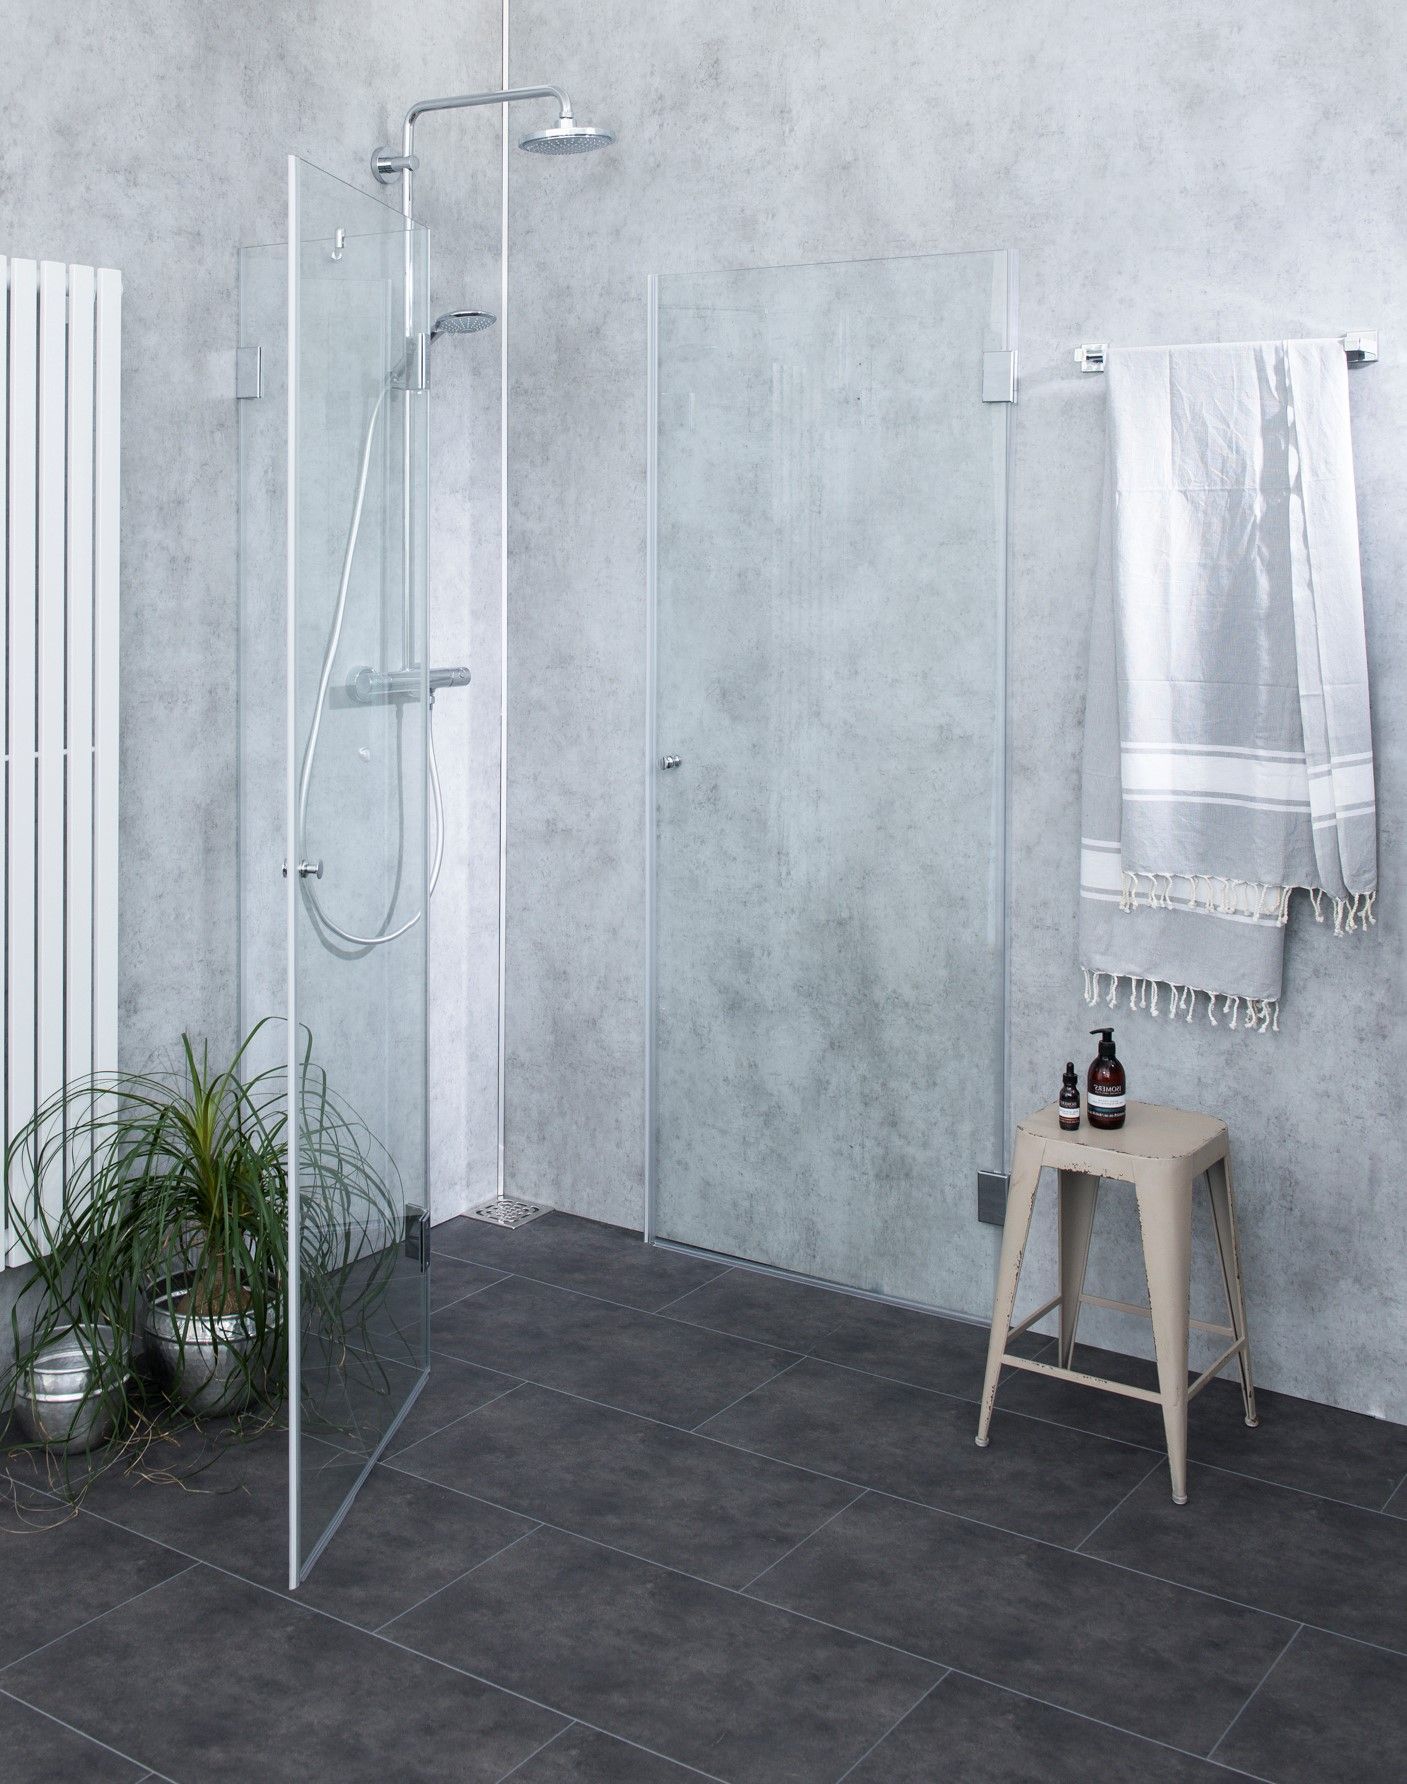 Platzsparende dusche - Unsere Produkte unter der Menge an verglichenenPlatzsparende dusche!